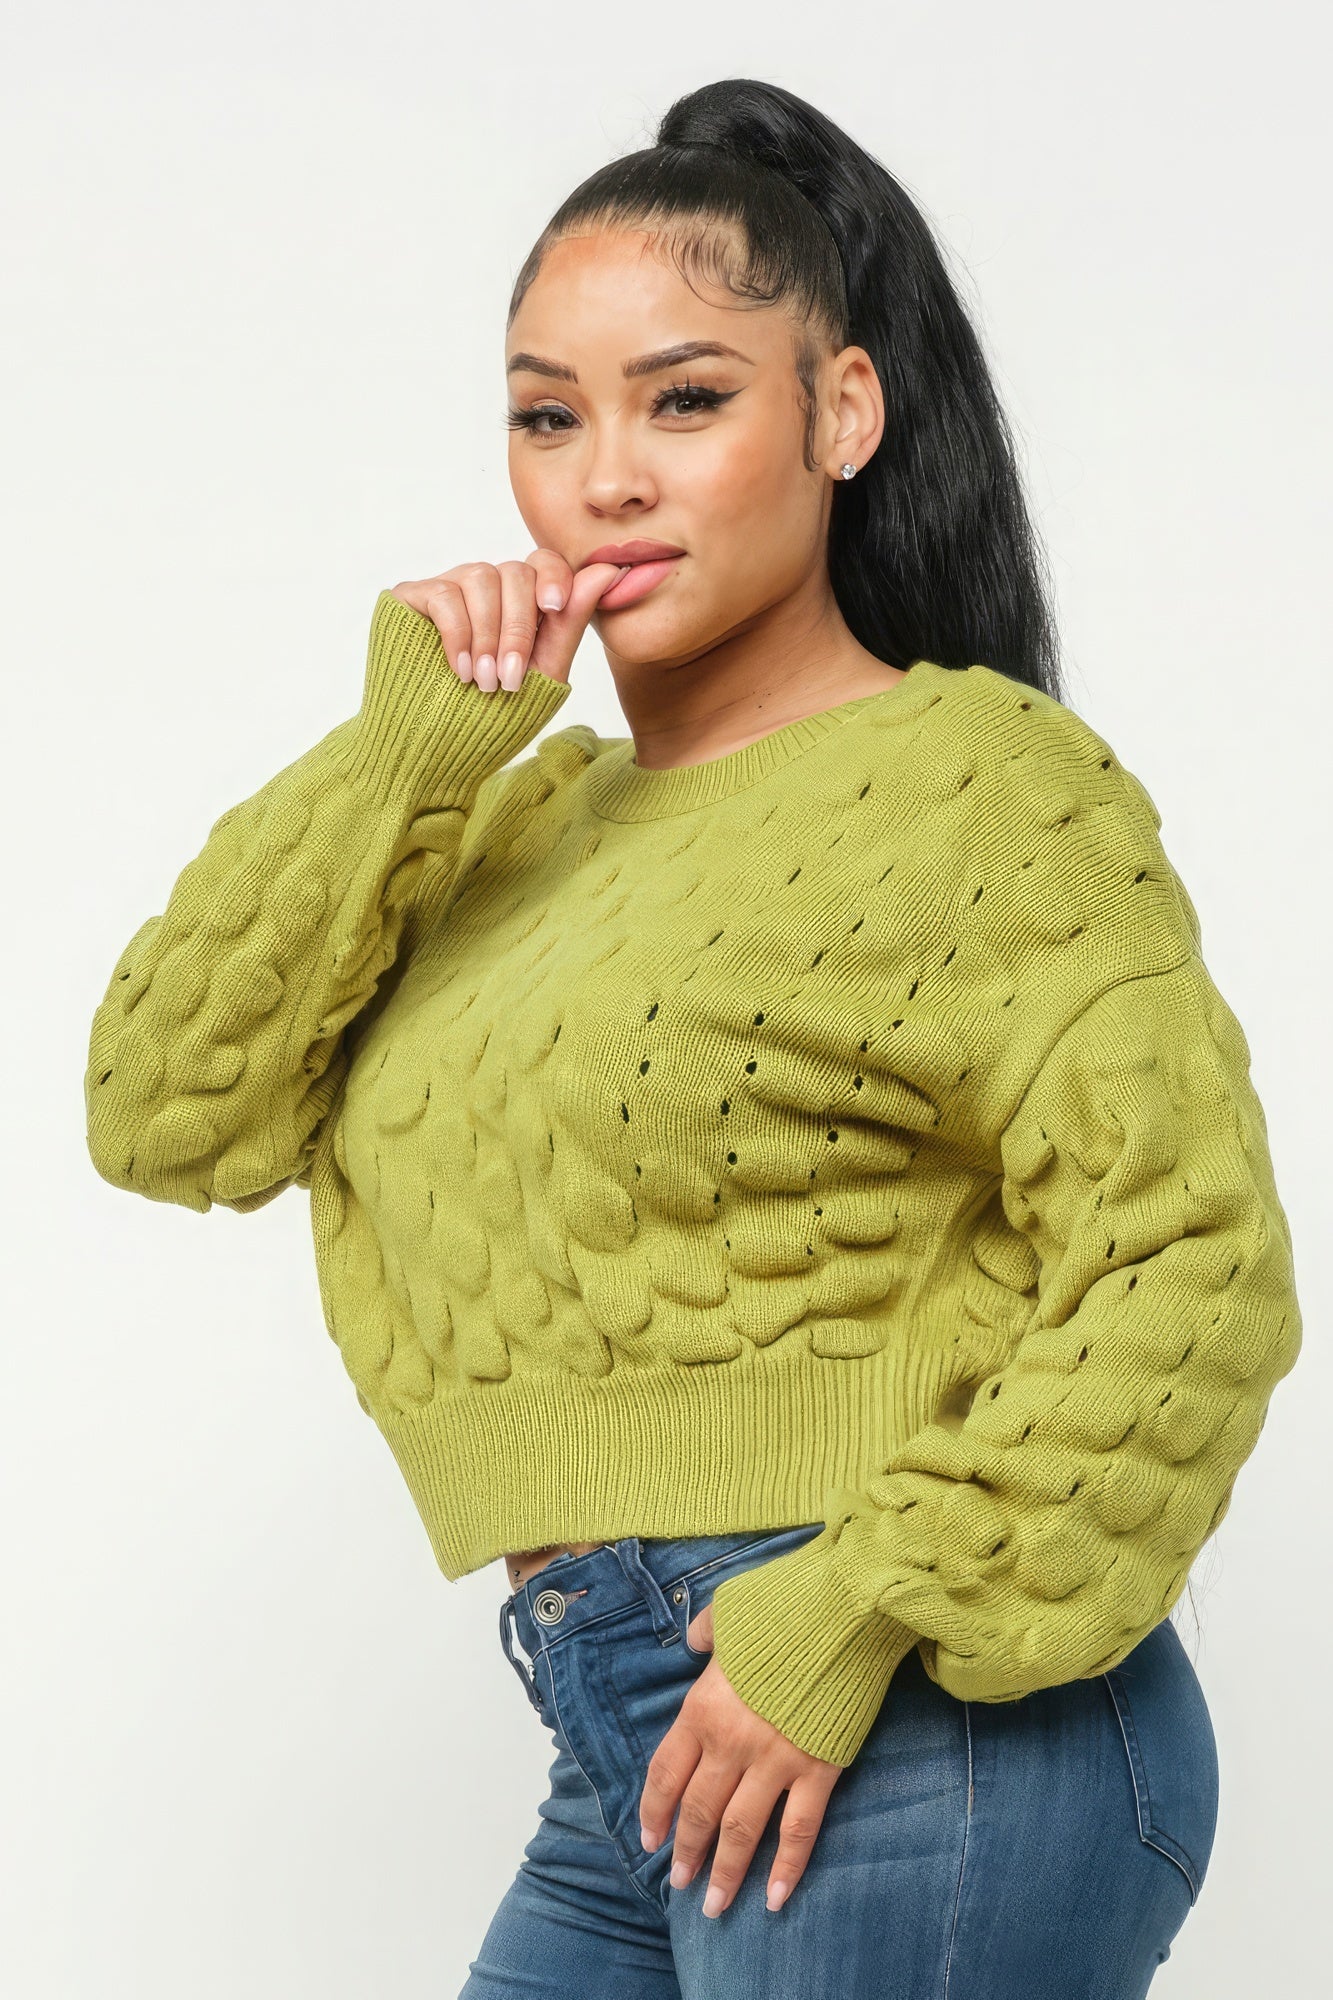 Checker Sweater Top - Supreme Deals